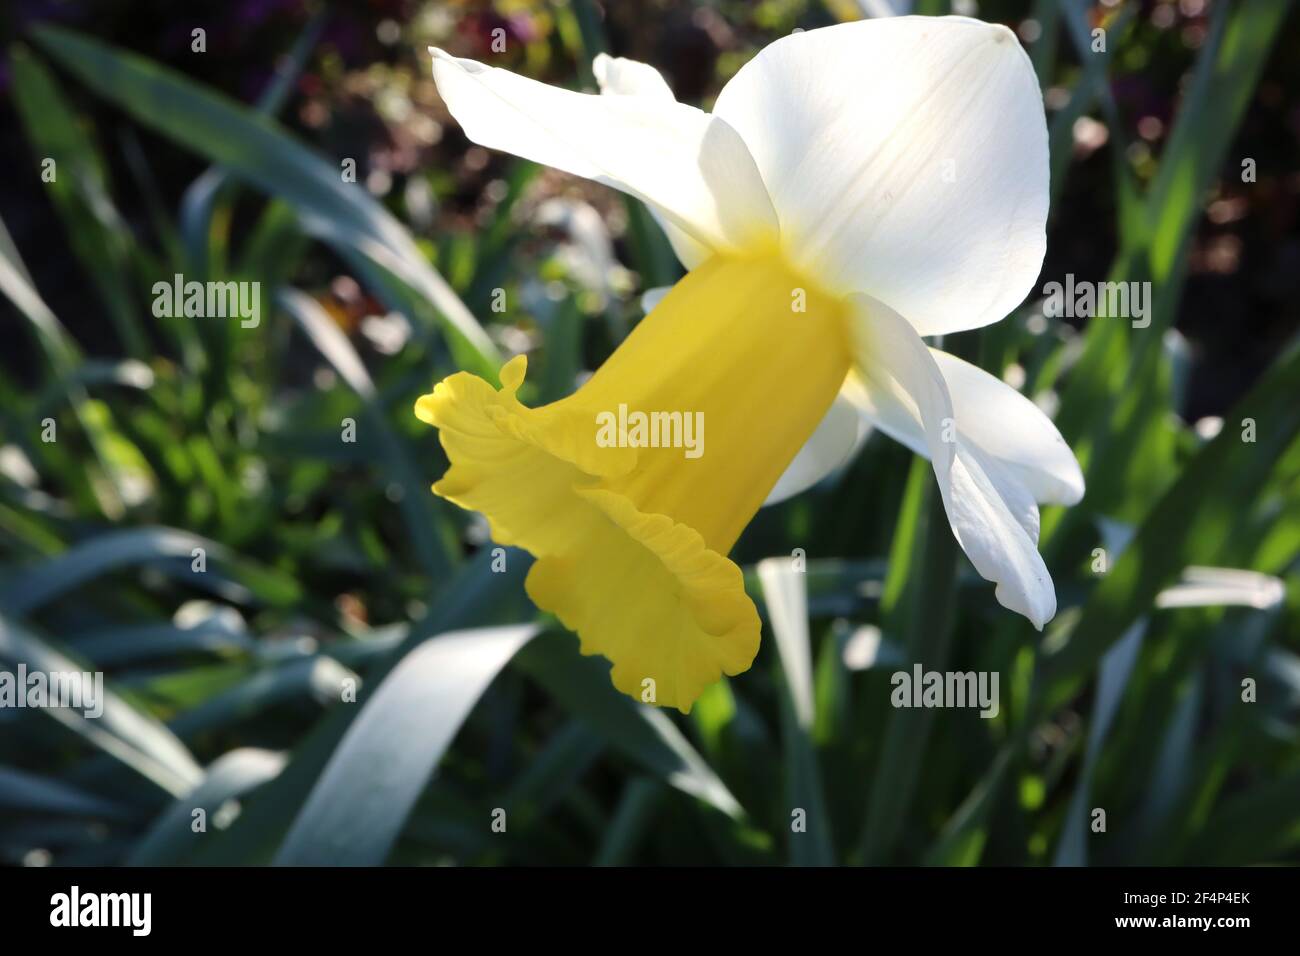 Narcissus ‘Topolino’ Division 1 jonquilles en trompette Topolino jonquille - pétales blancs avec grande coupe à volants jaune doré, mars, Angleterre, Royaume-Uni Banque D'Images